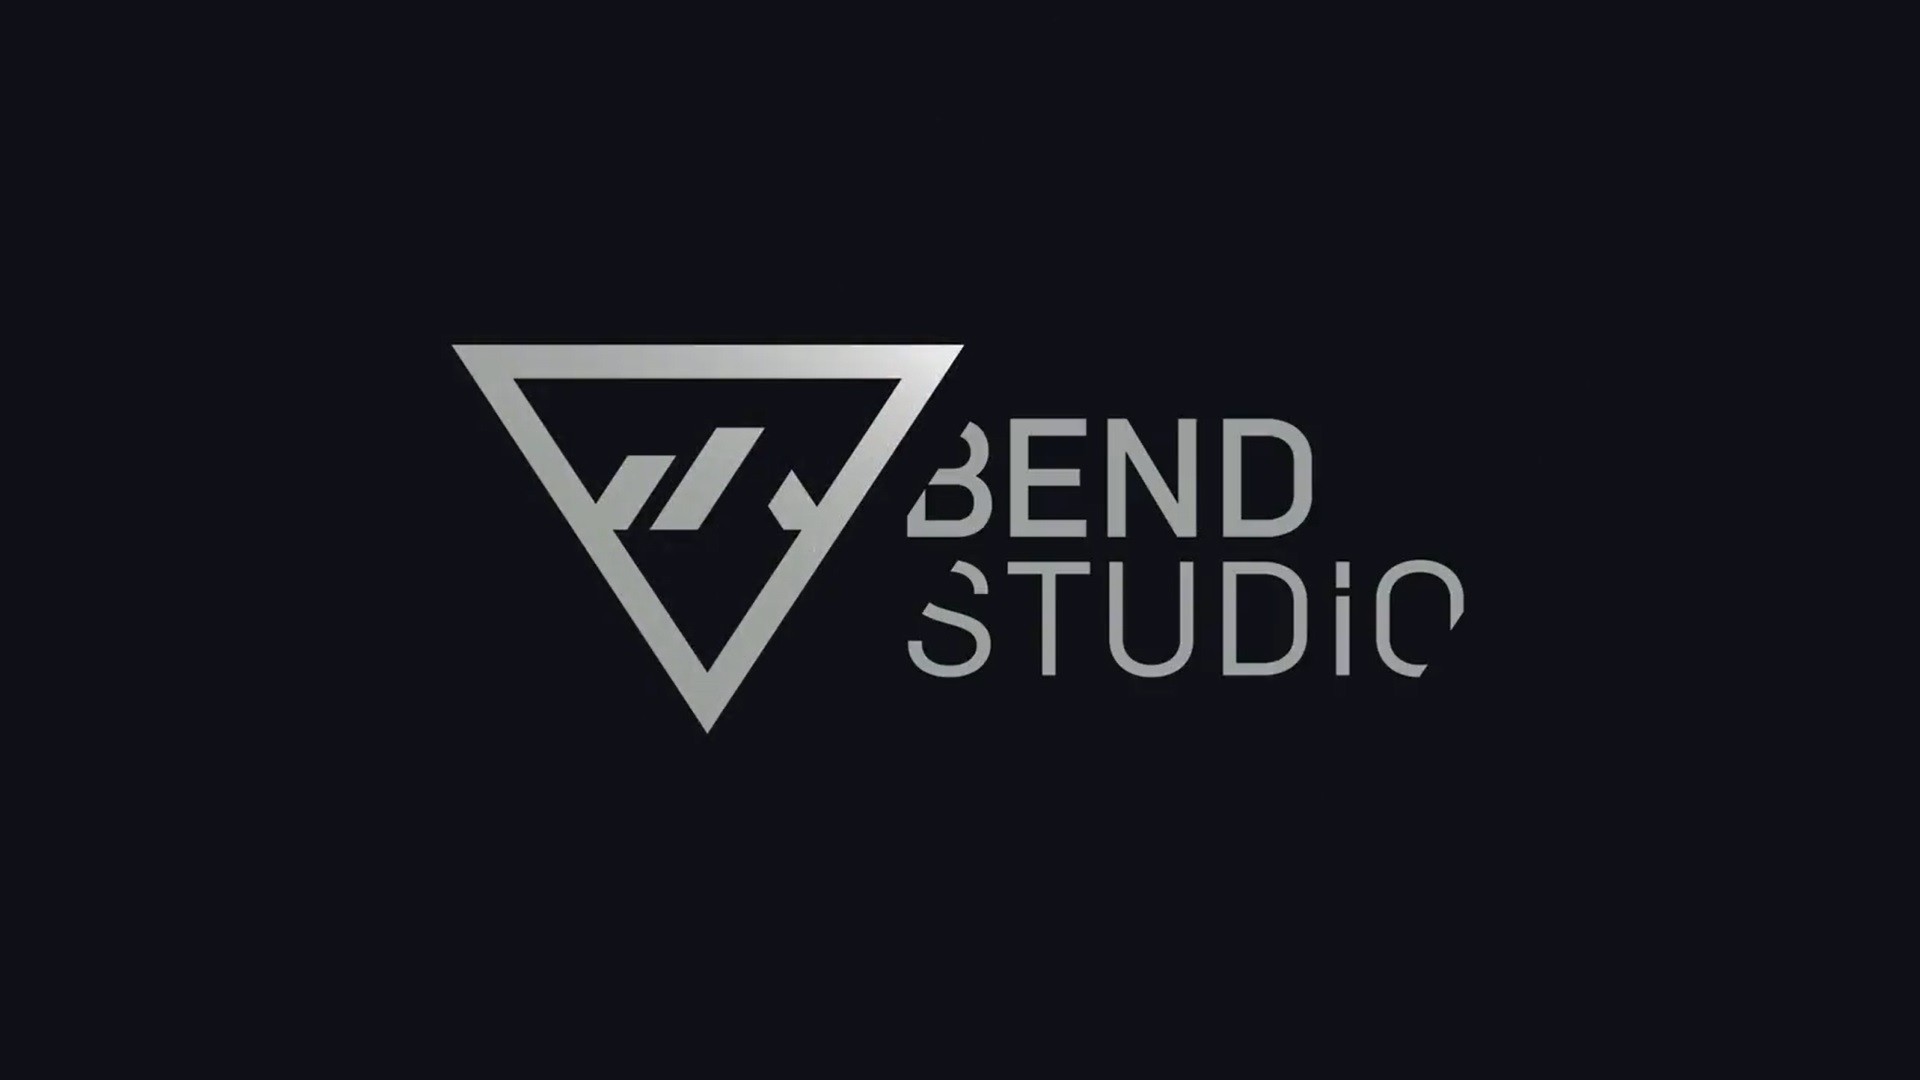 Bend Studio เปิดตัวโลโก้ใหม่ พร้อมเผยกำลังพัฒนาโปรเจกต์ใหม่